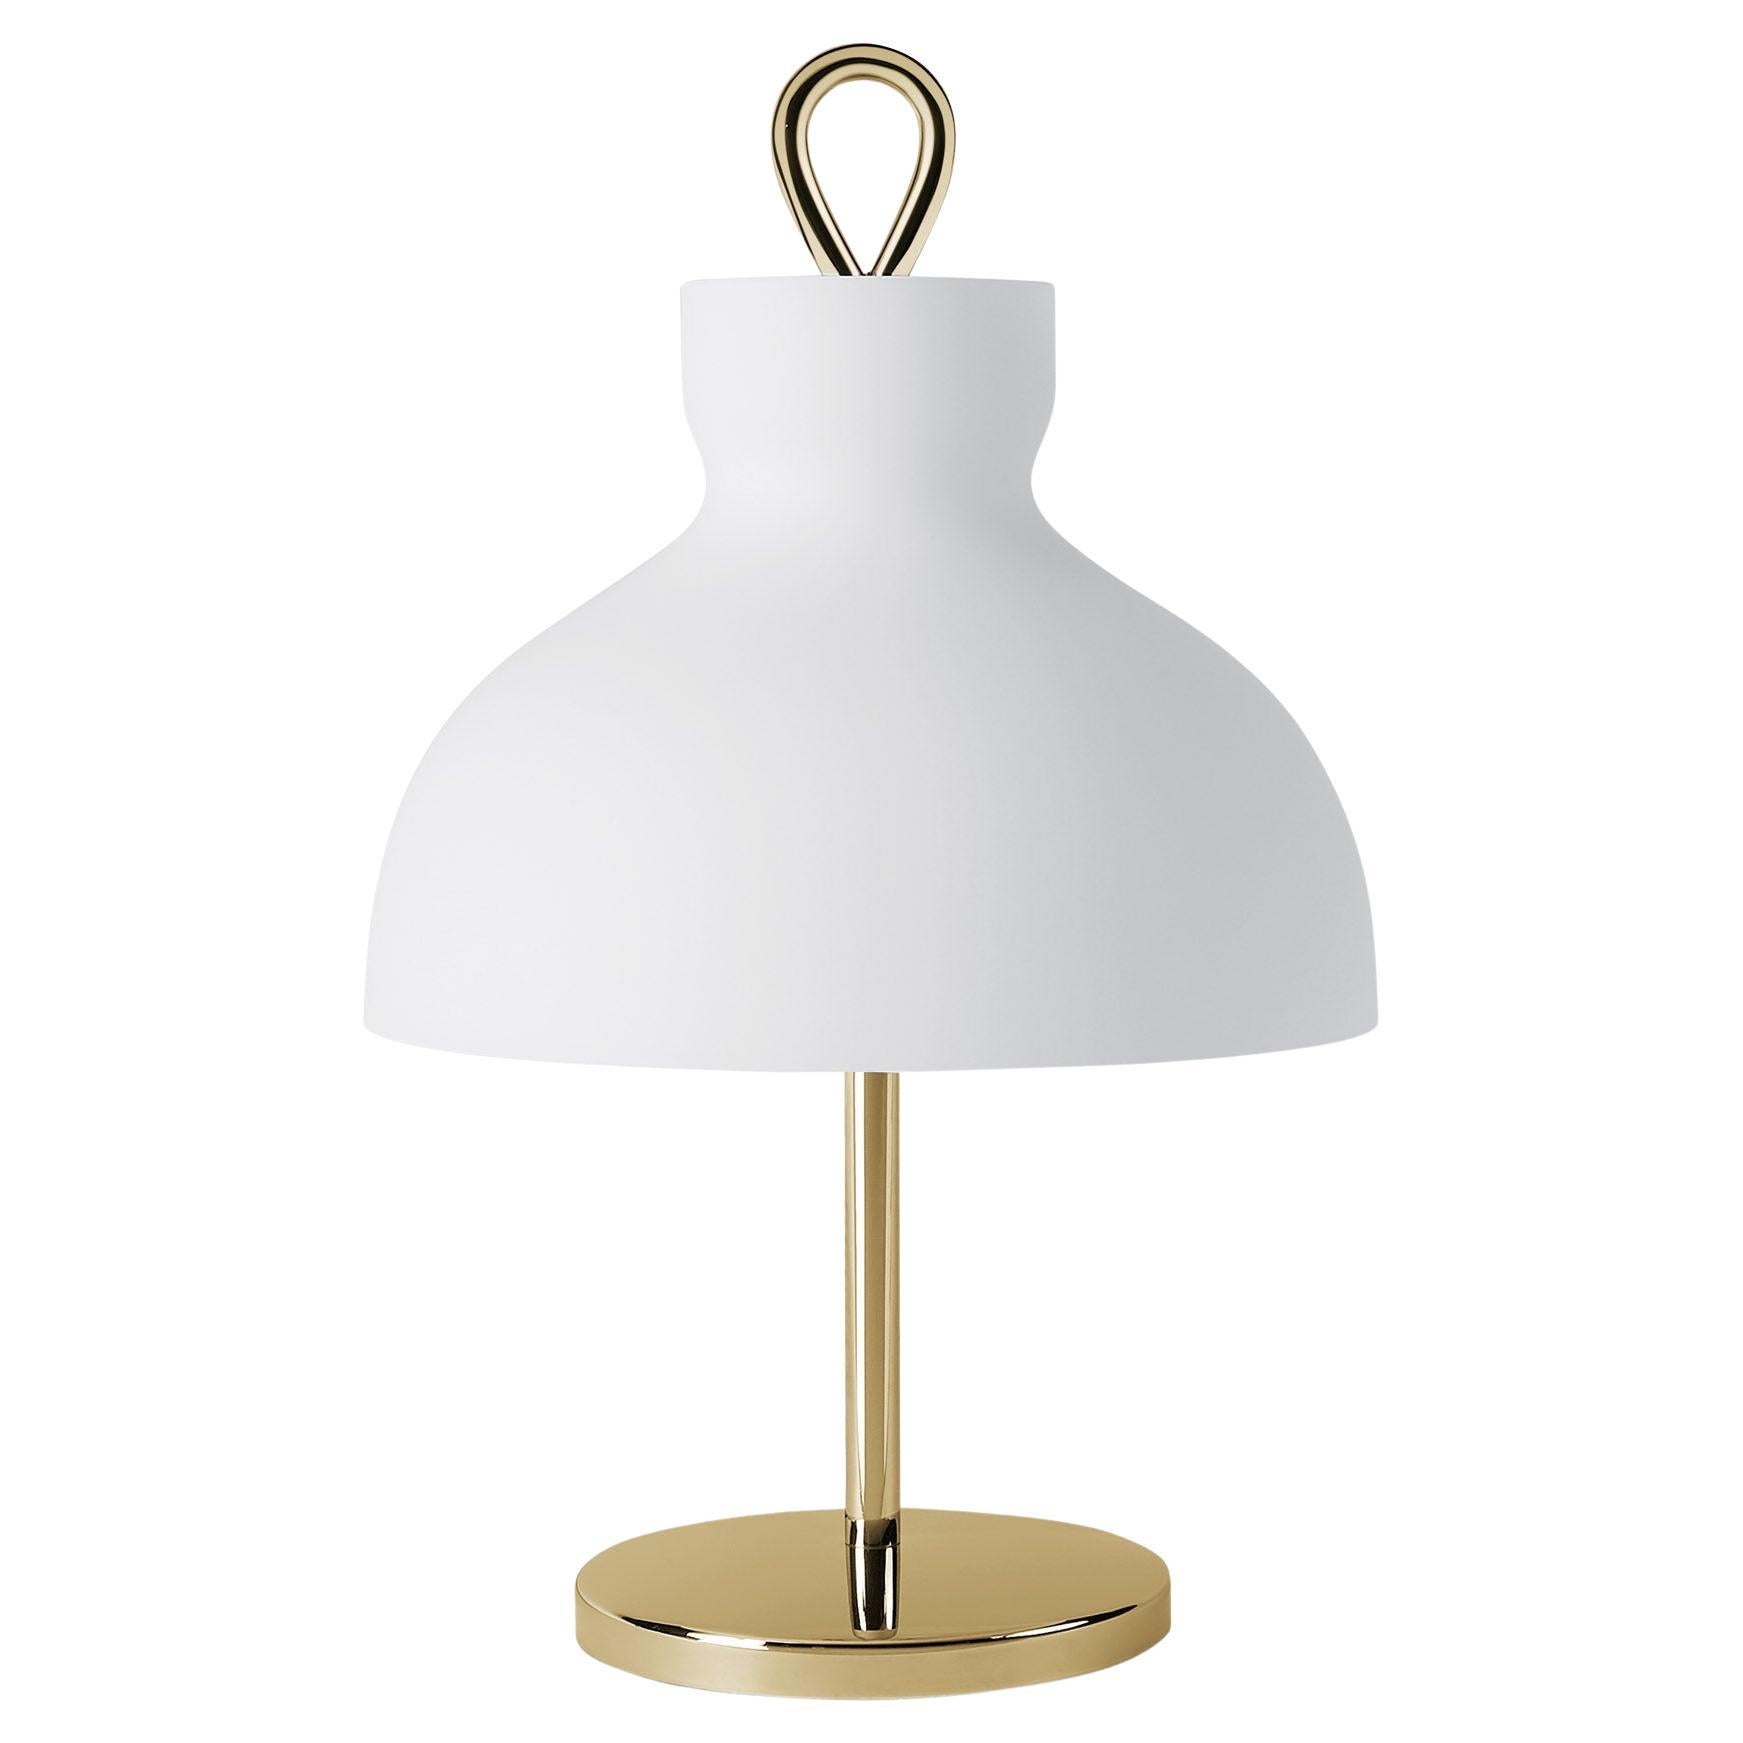 Arenzano Bassa, Low Table Lamp by Ignazio Gardella for TATO For Sale